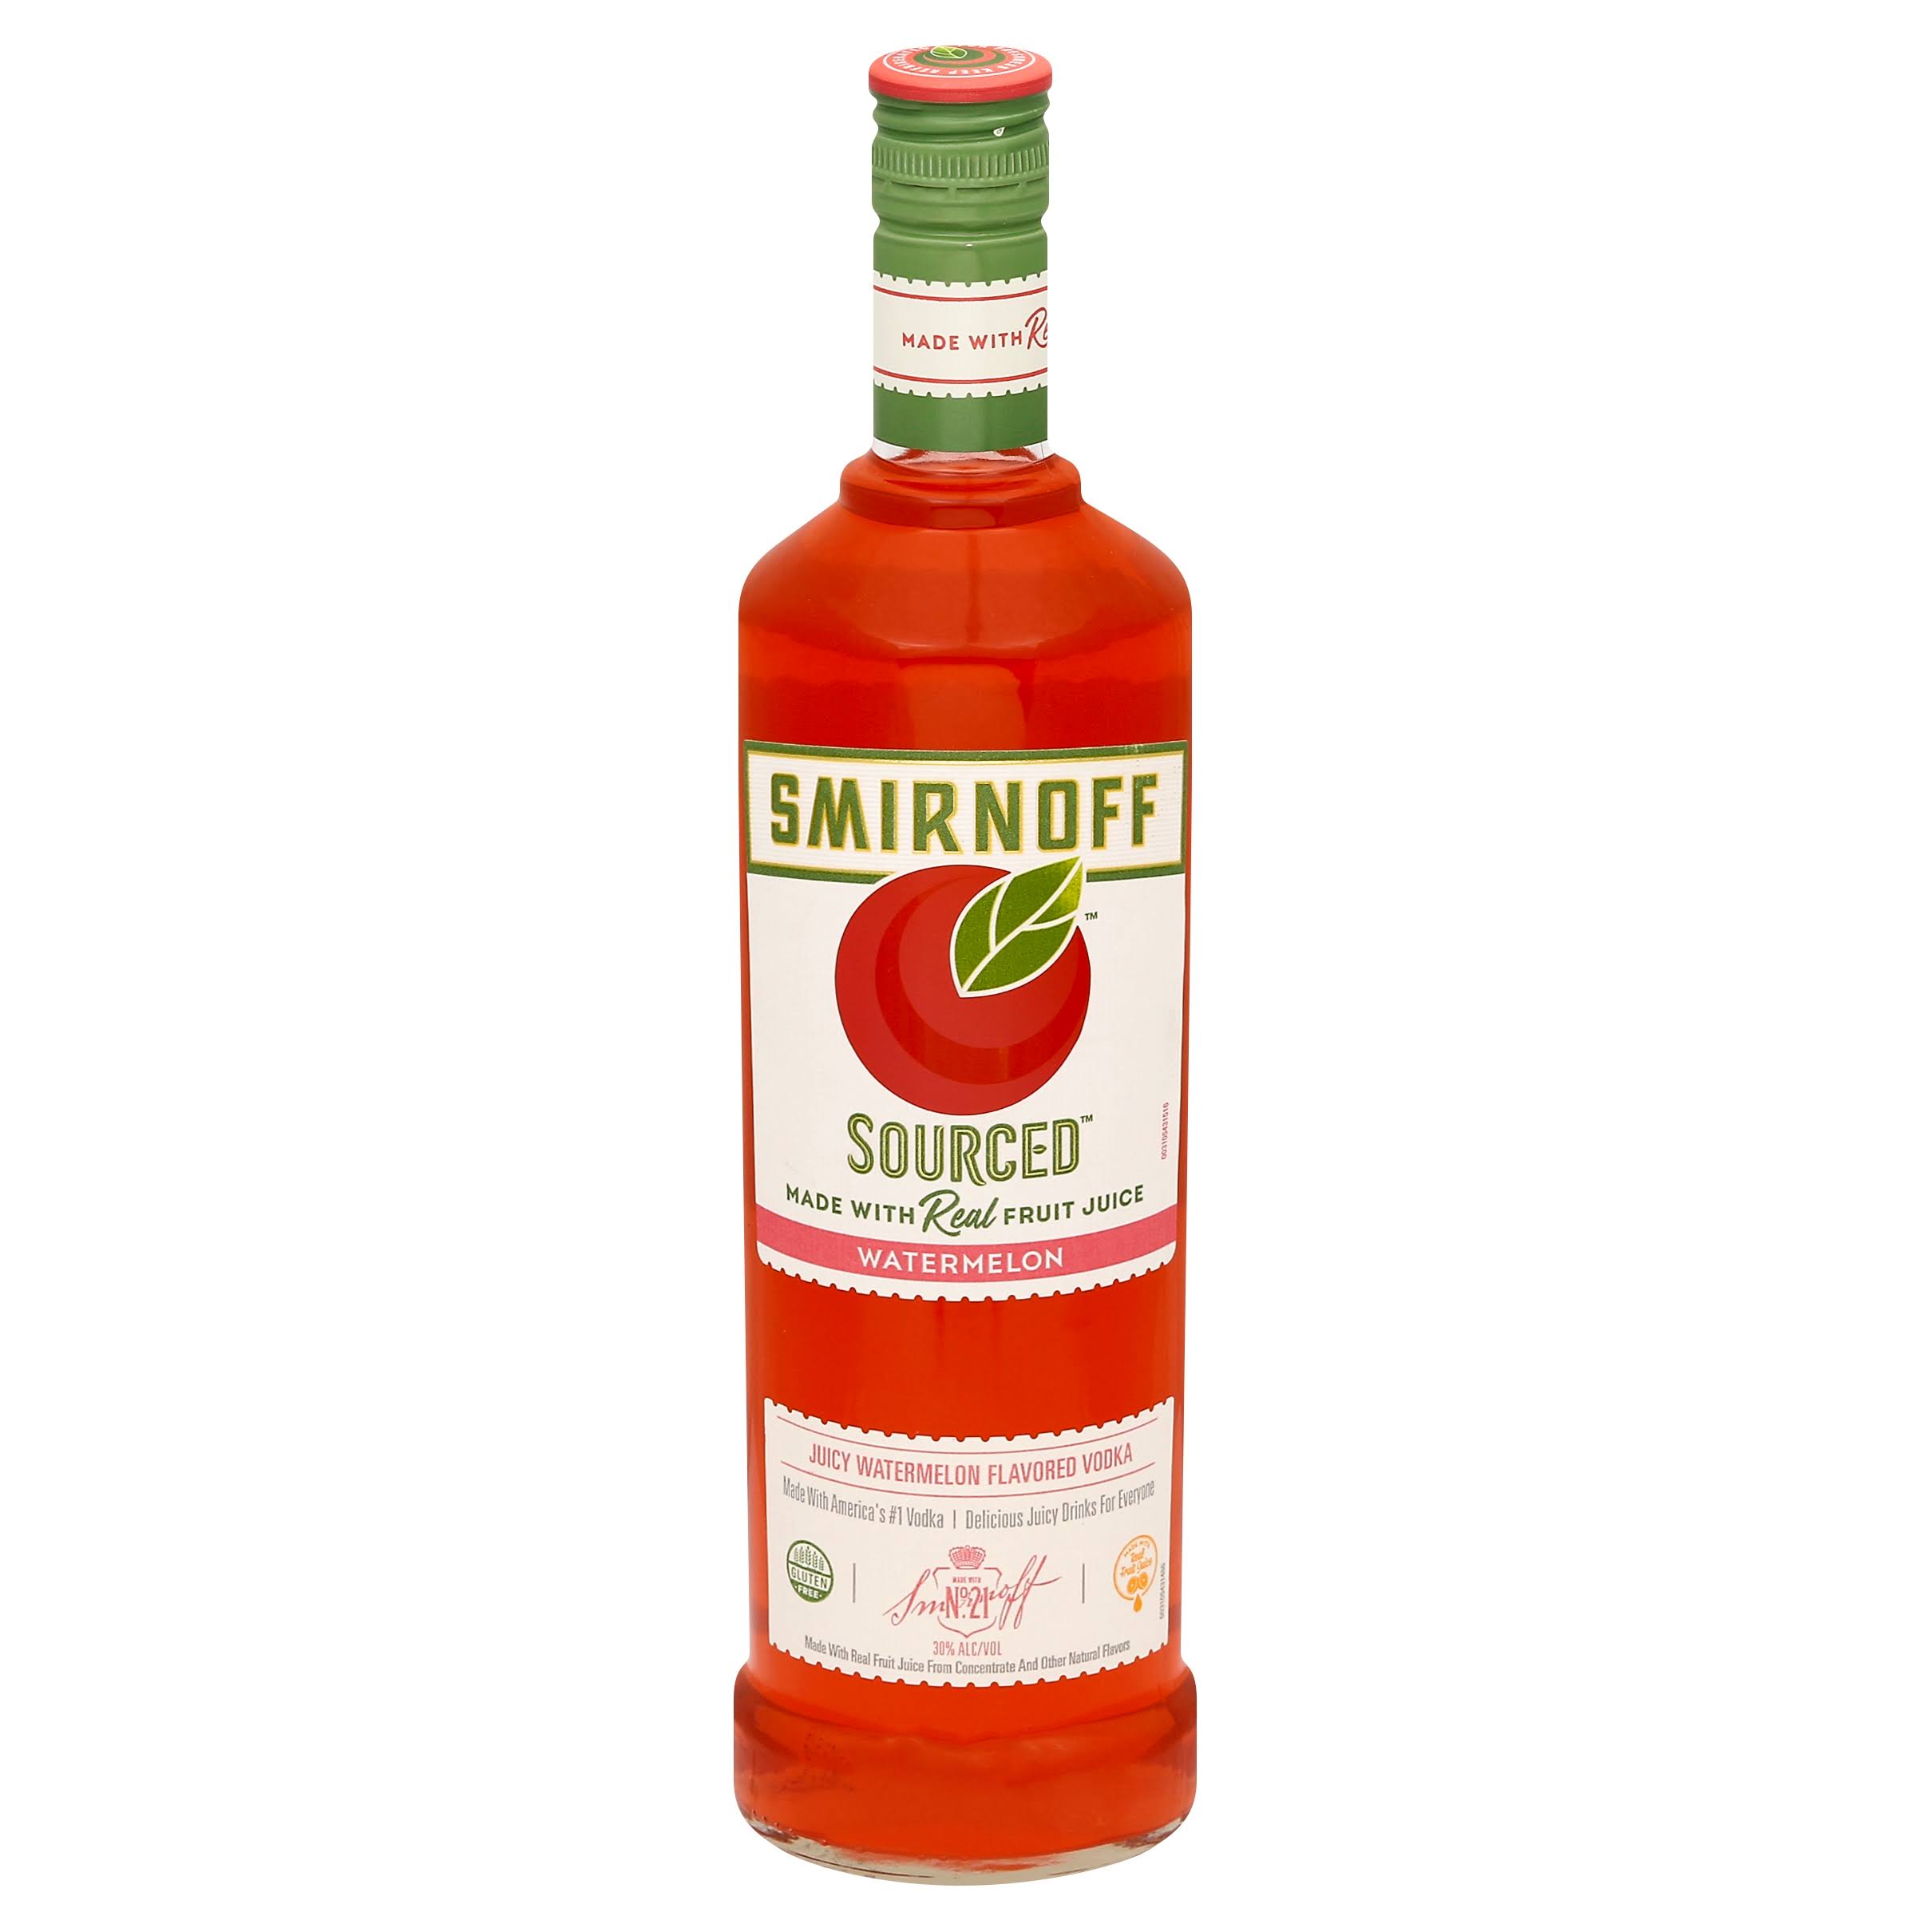 Smirnoff Sourced Vodka, Watermelon - 750 ml